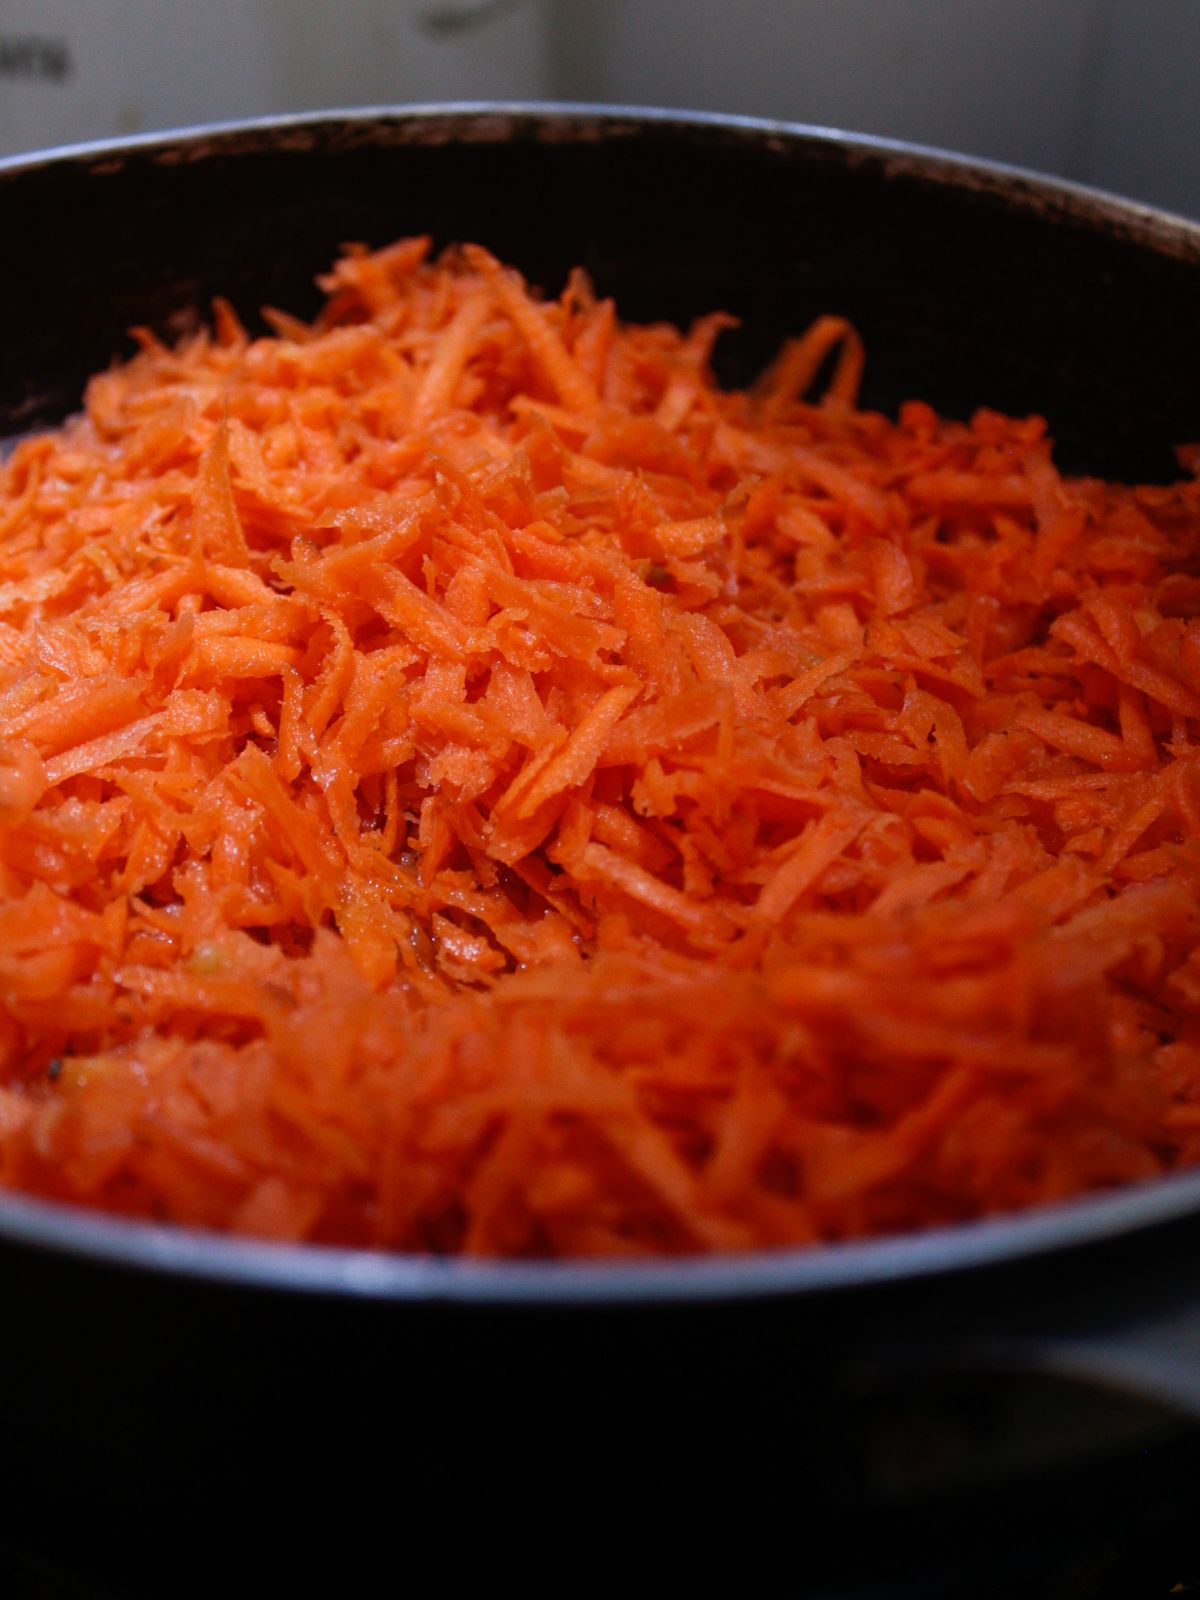 Shredded carrots in large skillet